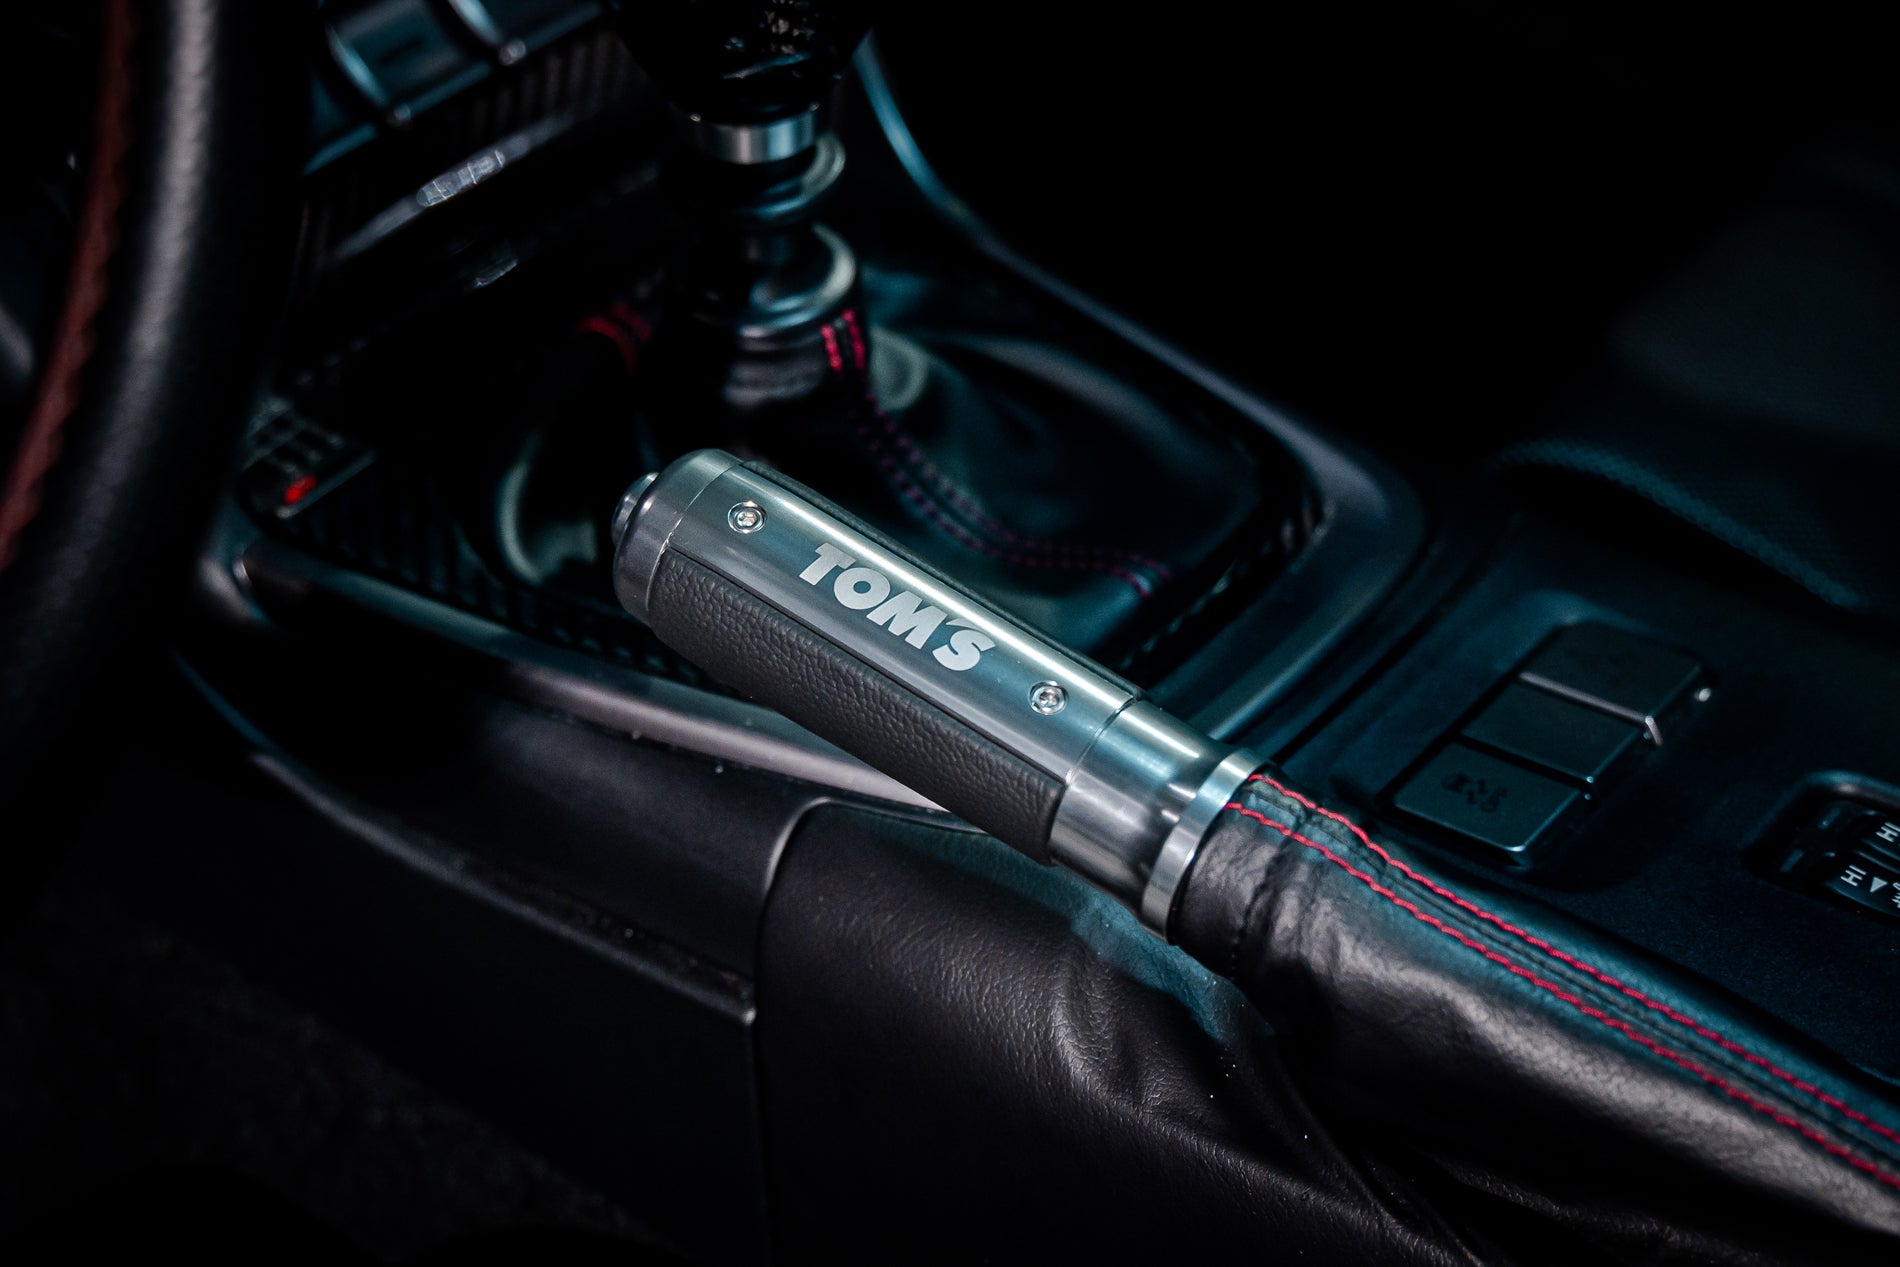 6Pcs Carbon Fiber Interior Trim Cover Set For Toyota GT86 Scion FR-S Subaru  BRZ